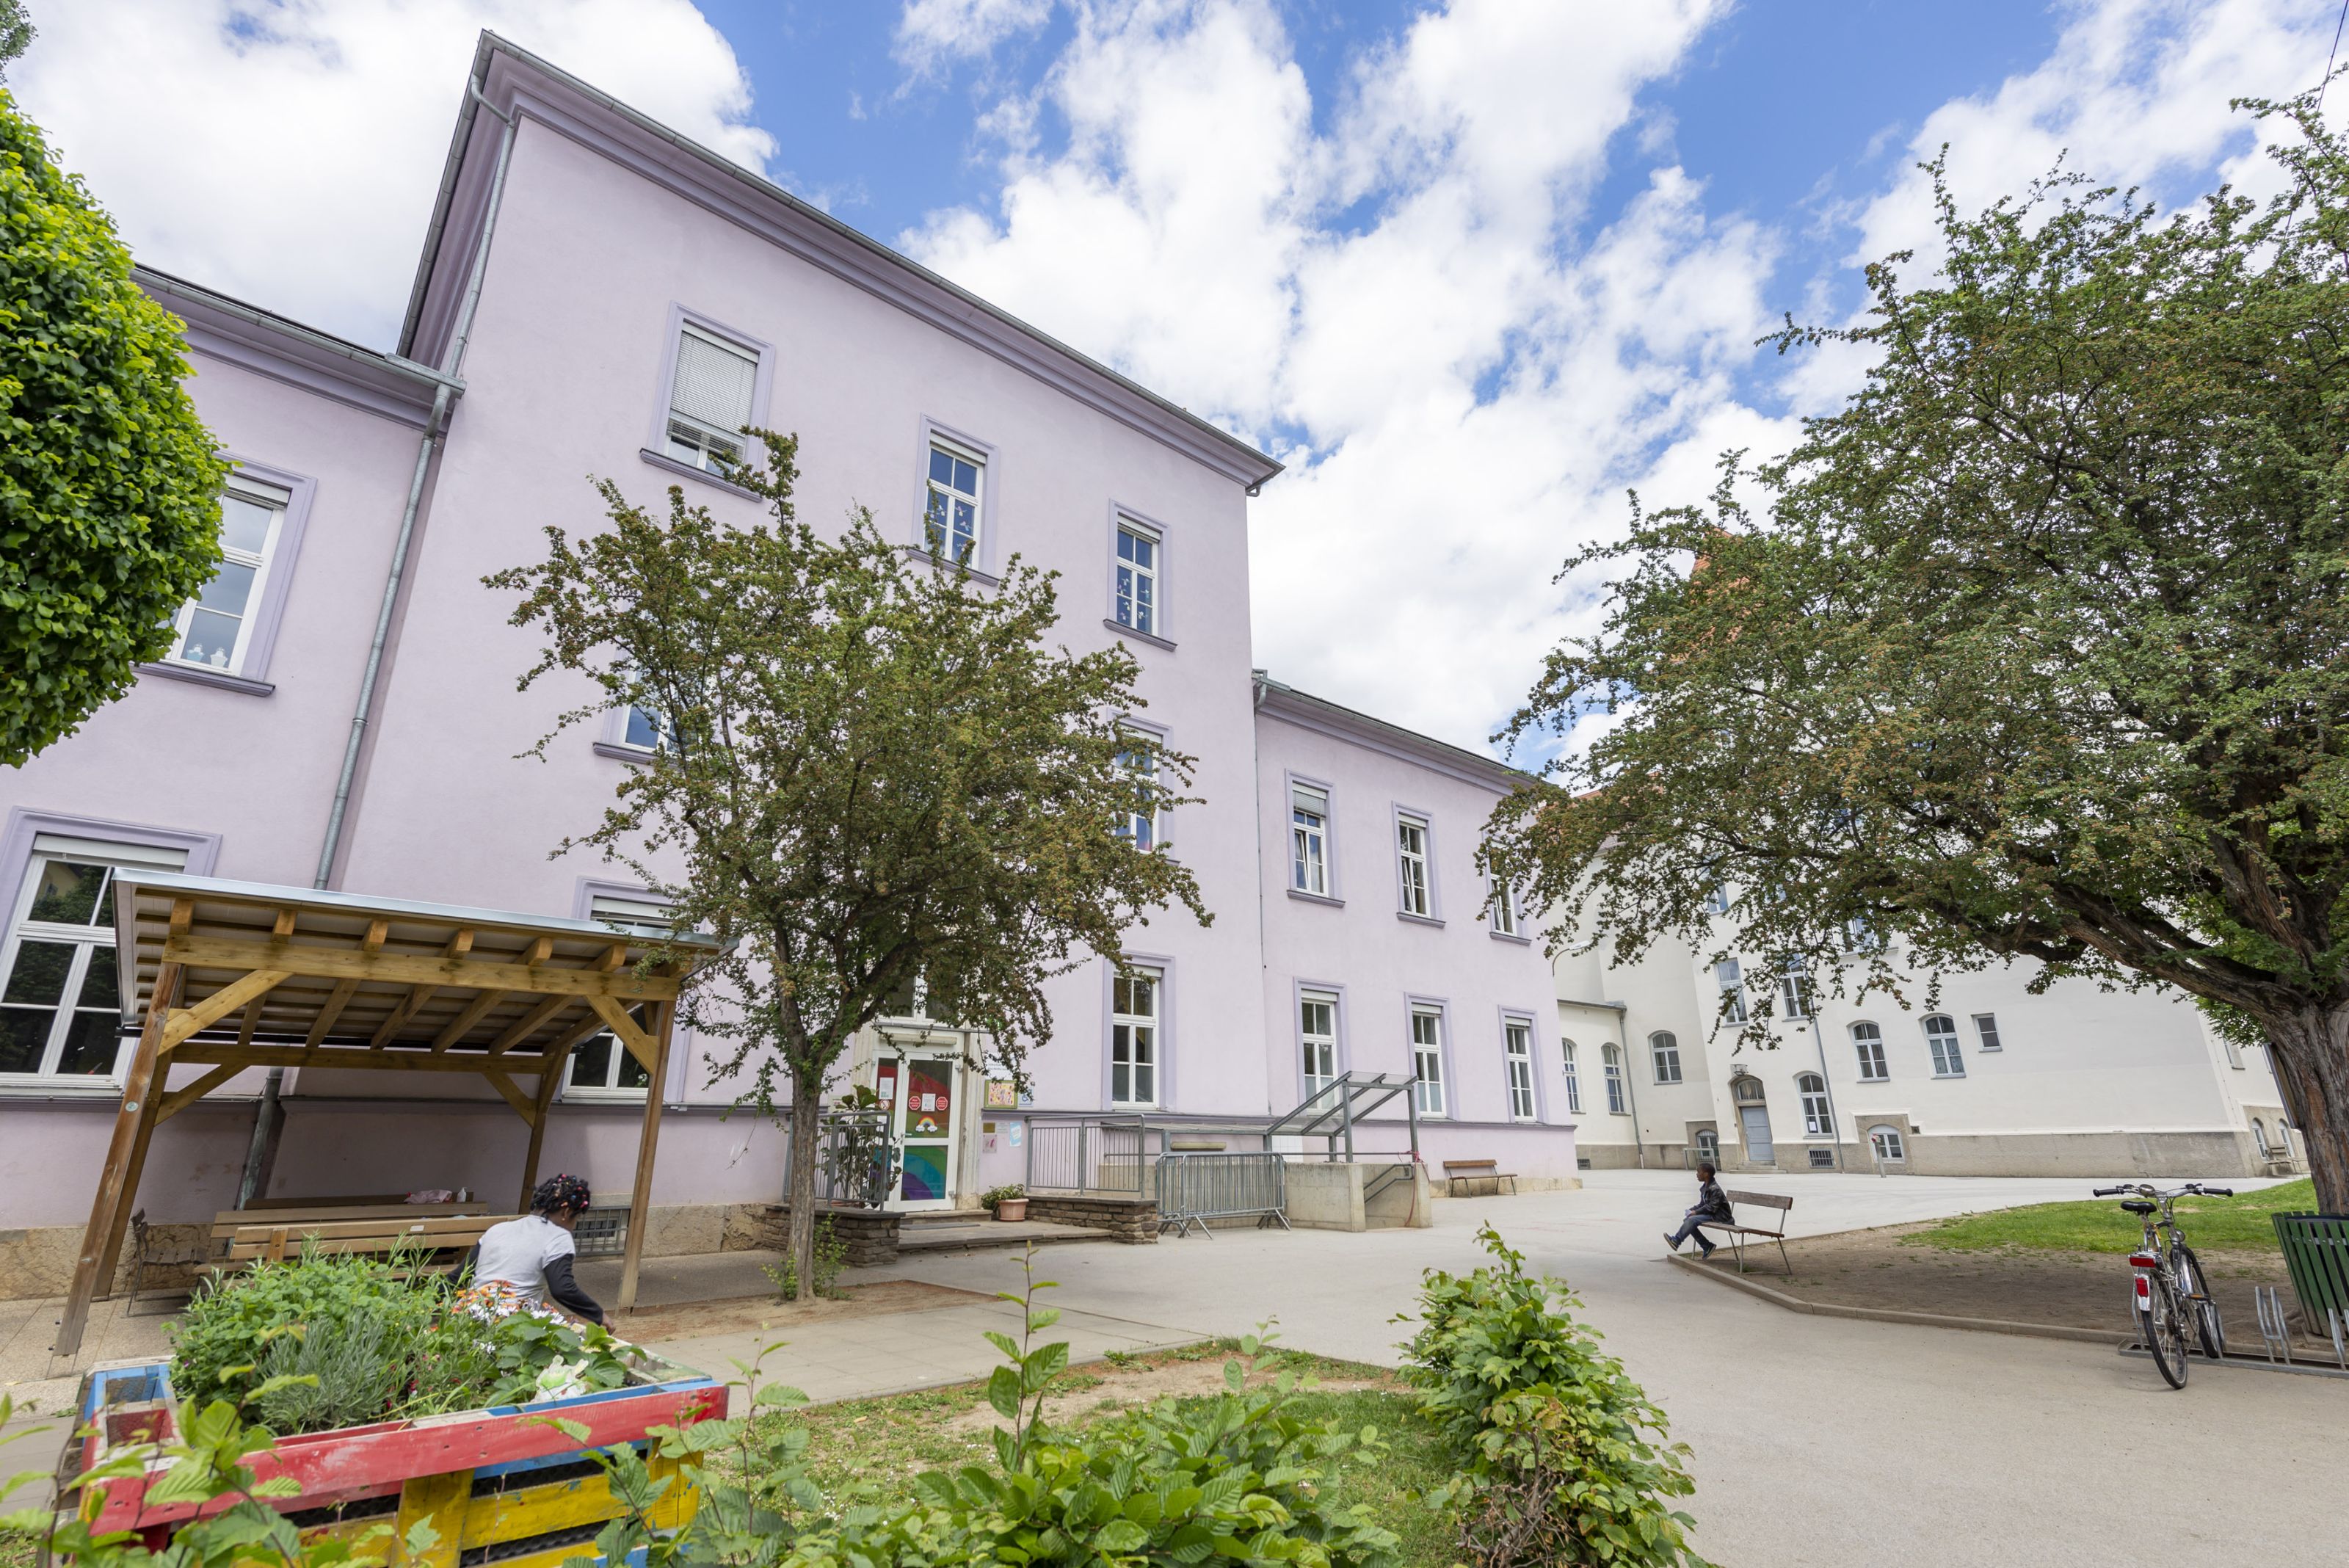 Volksschule Bertha von Suttner - Schulhof